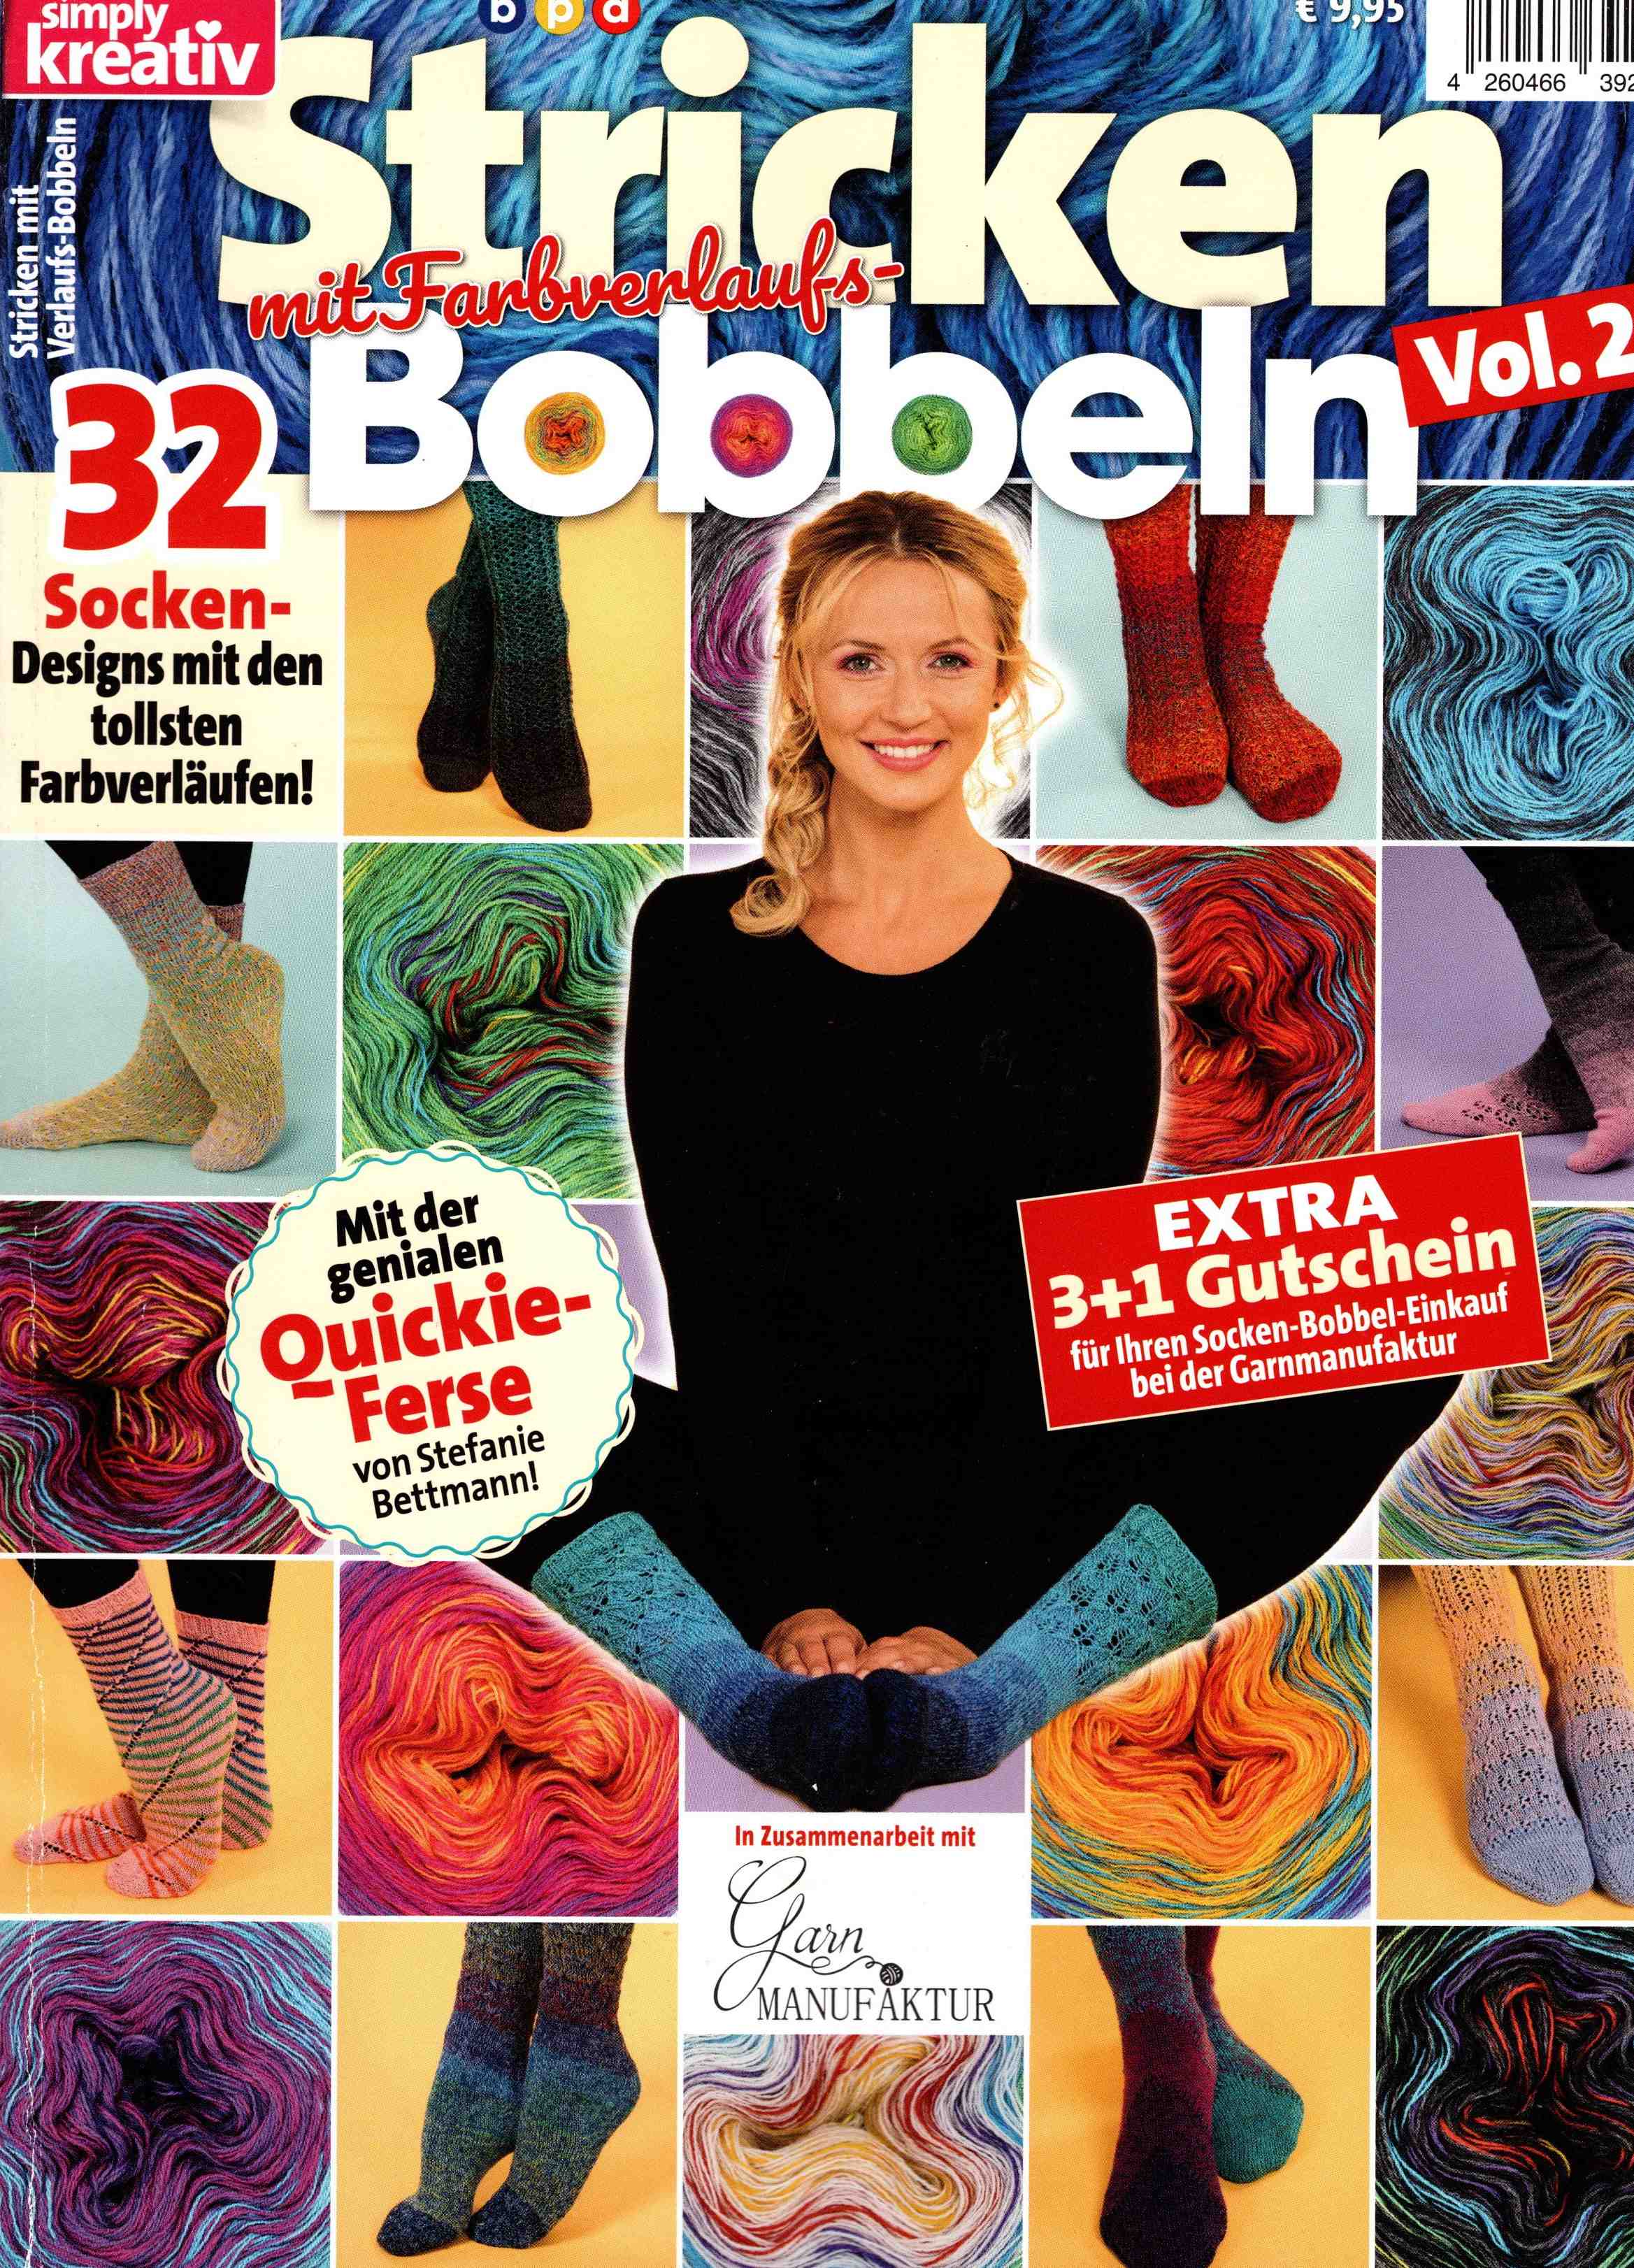 Simply Stricken mit Farbverlaufsbobbeln Vol. 2 -Socken